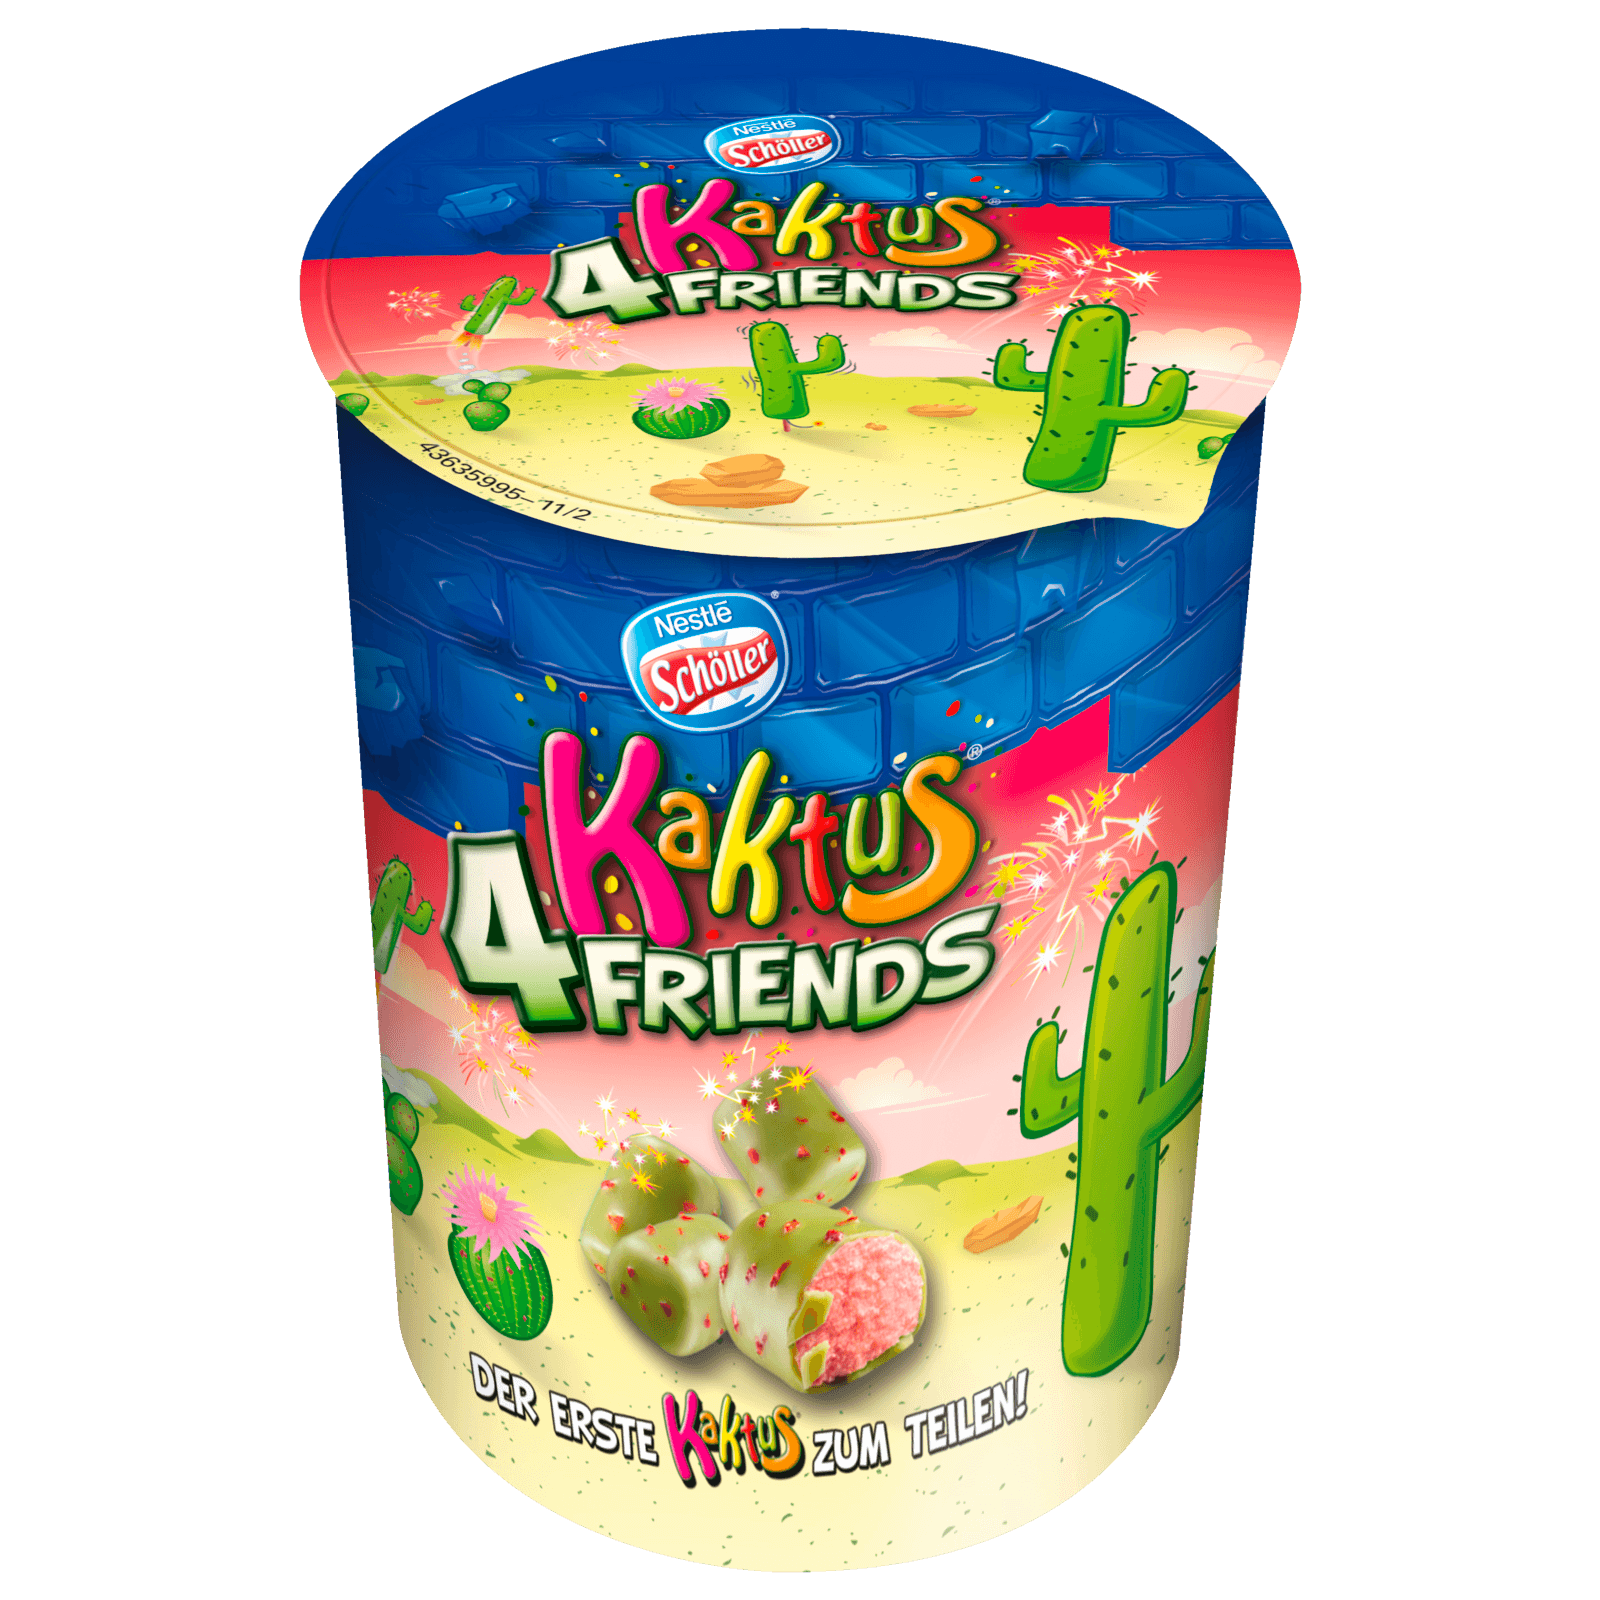 Nestle Scholler Eis Kaktus 4 Friends 90ml Bei Rewe Online Bestellen